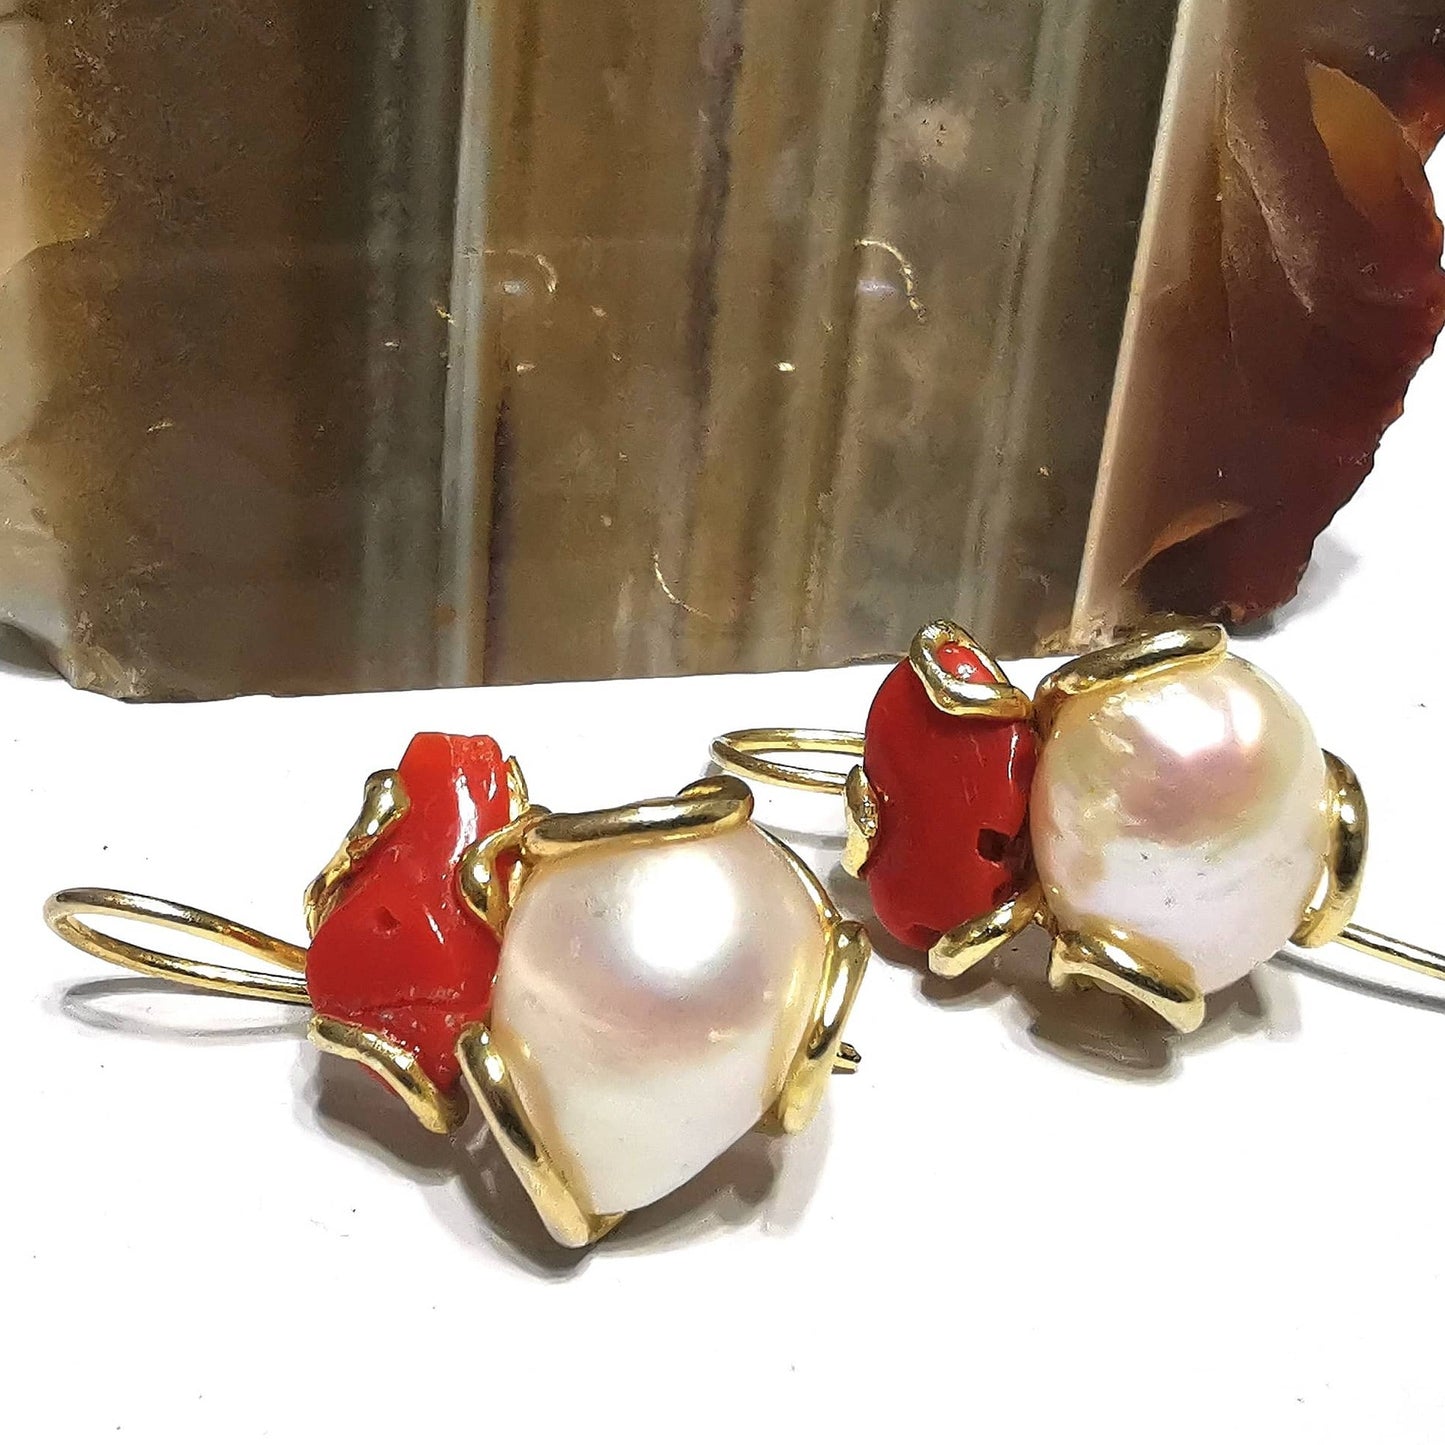 Orecchini Perle barocche e Corallo rosso in argento 925 placcati oro lavorati con sistema di fusione a cera persa e rifiniti a mano